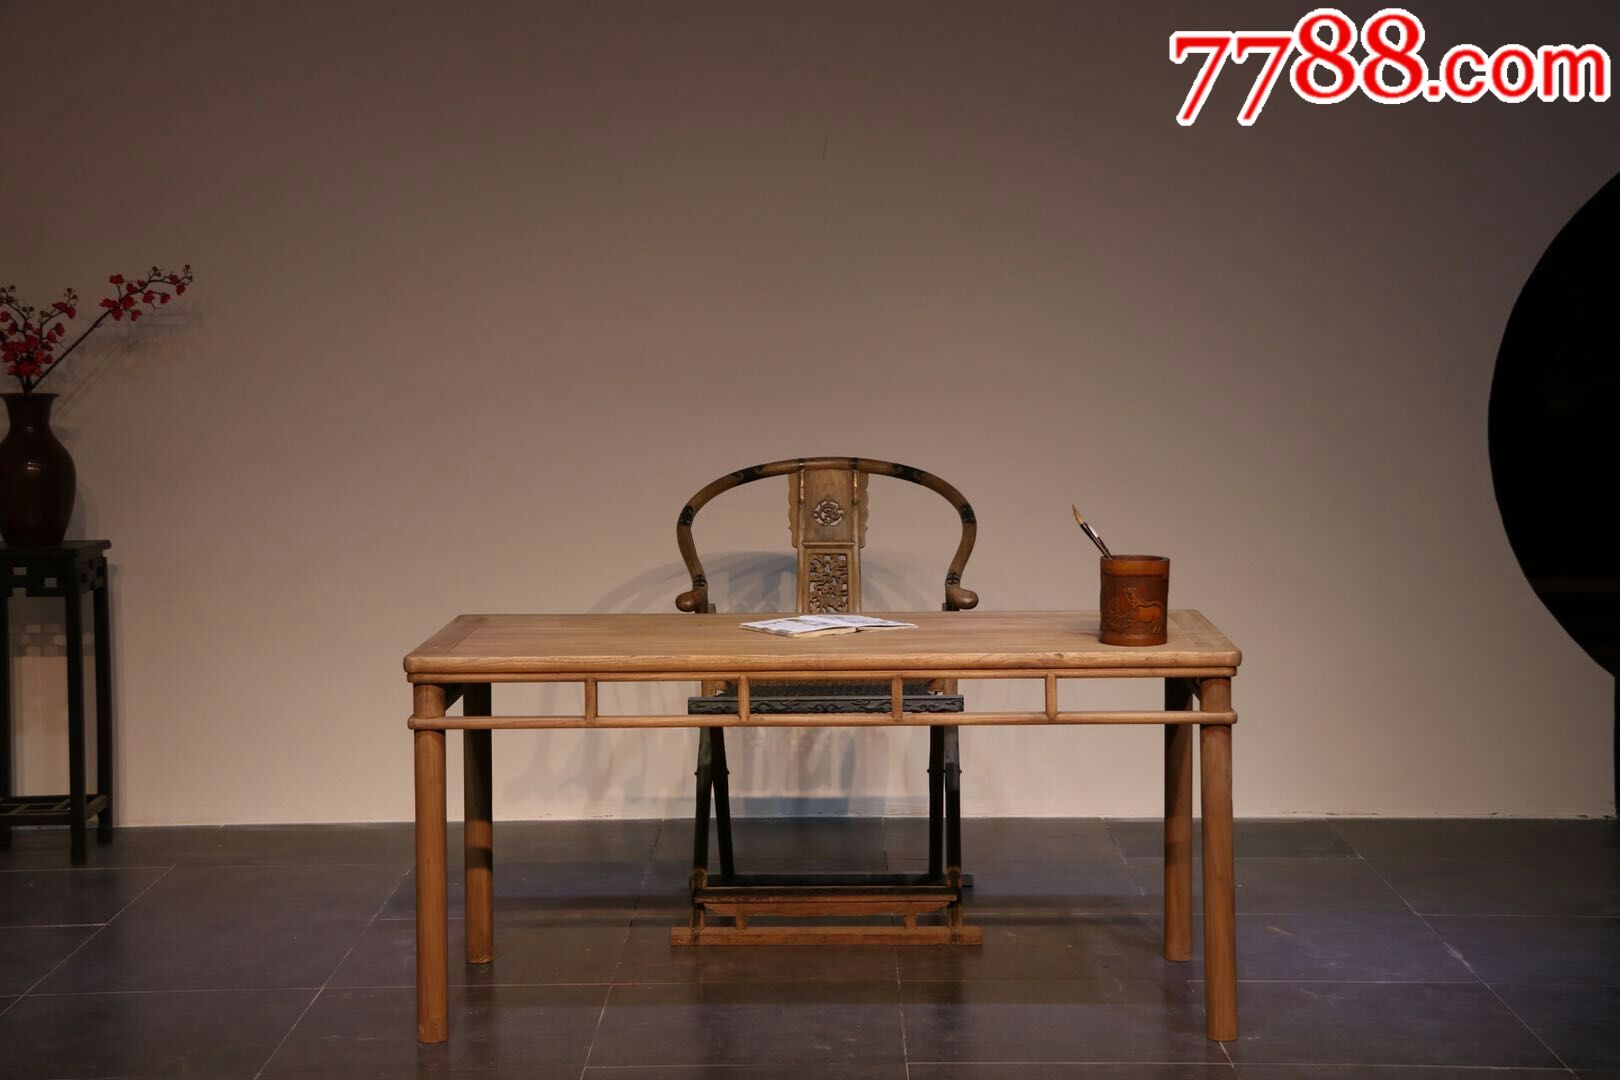 明式圆包圆书桌(茶桌)。做工简洁大方，不失优雅稳重。材质:榆木。尺寸:长1